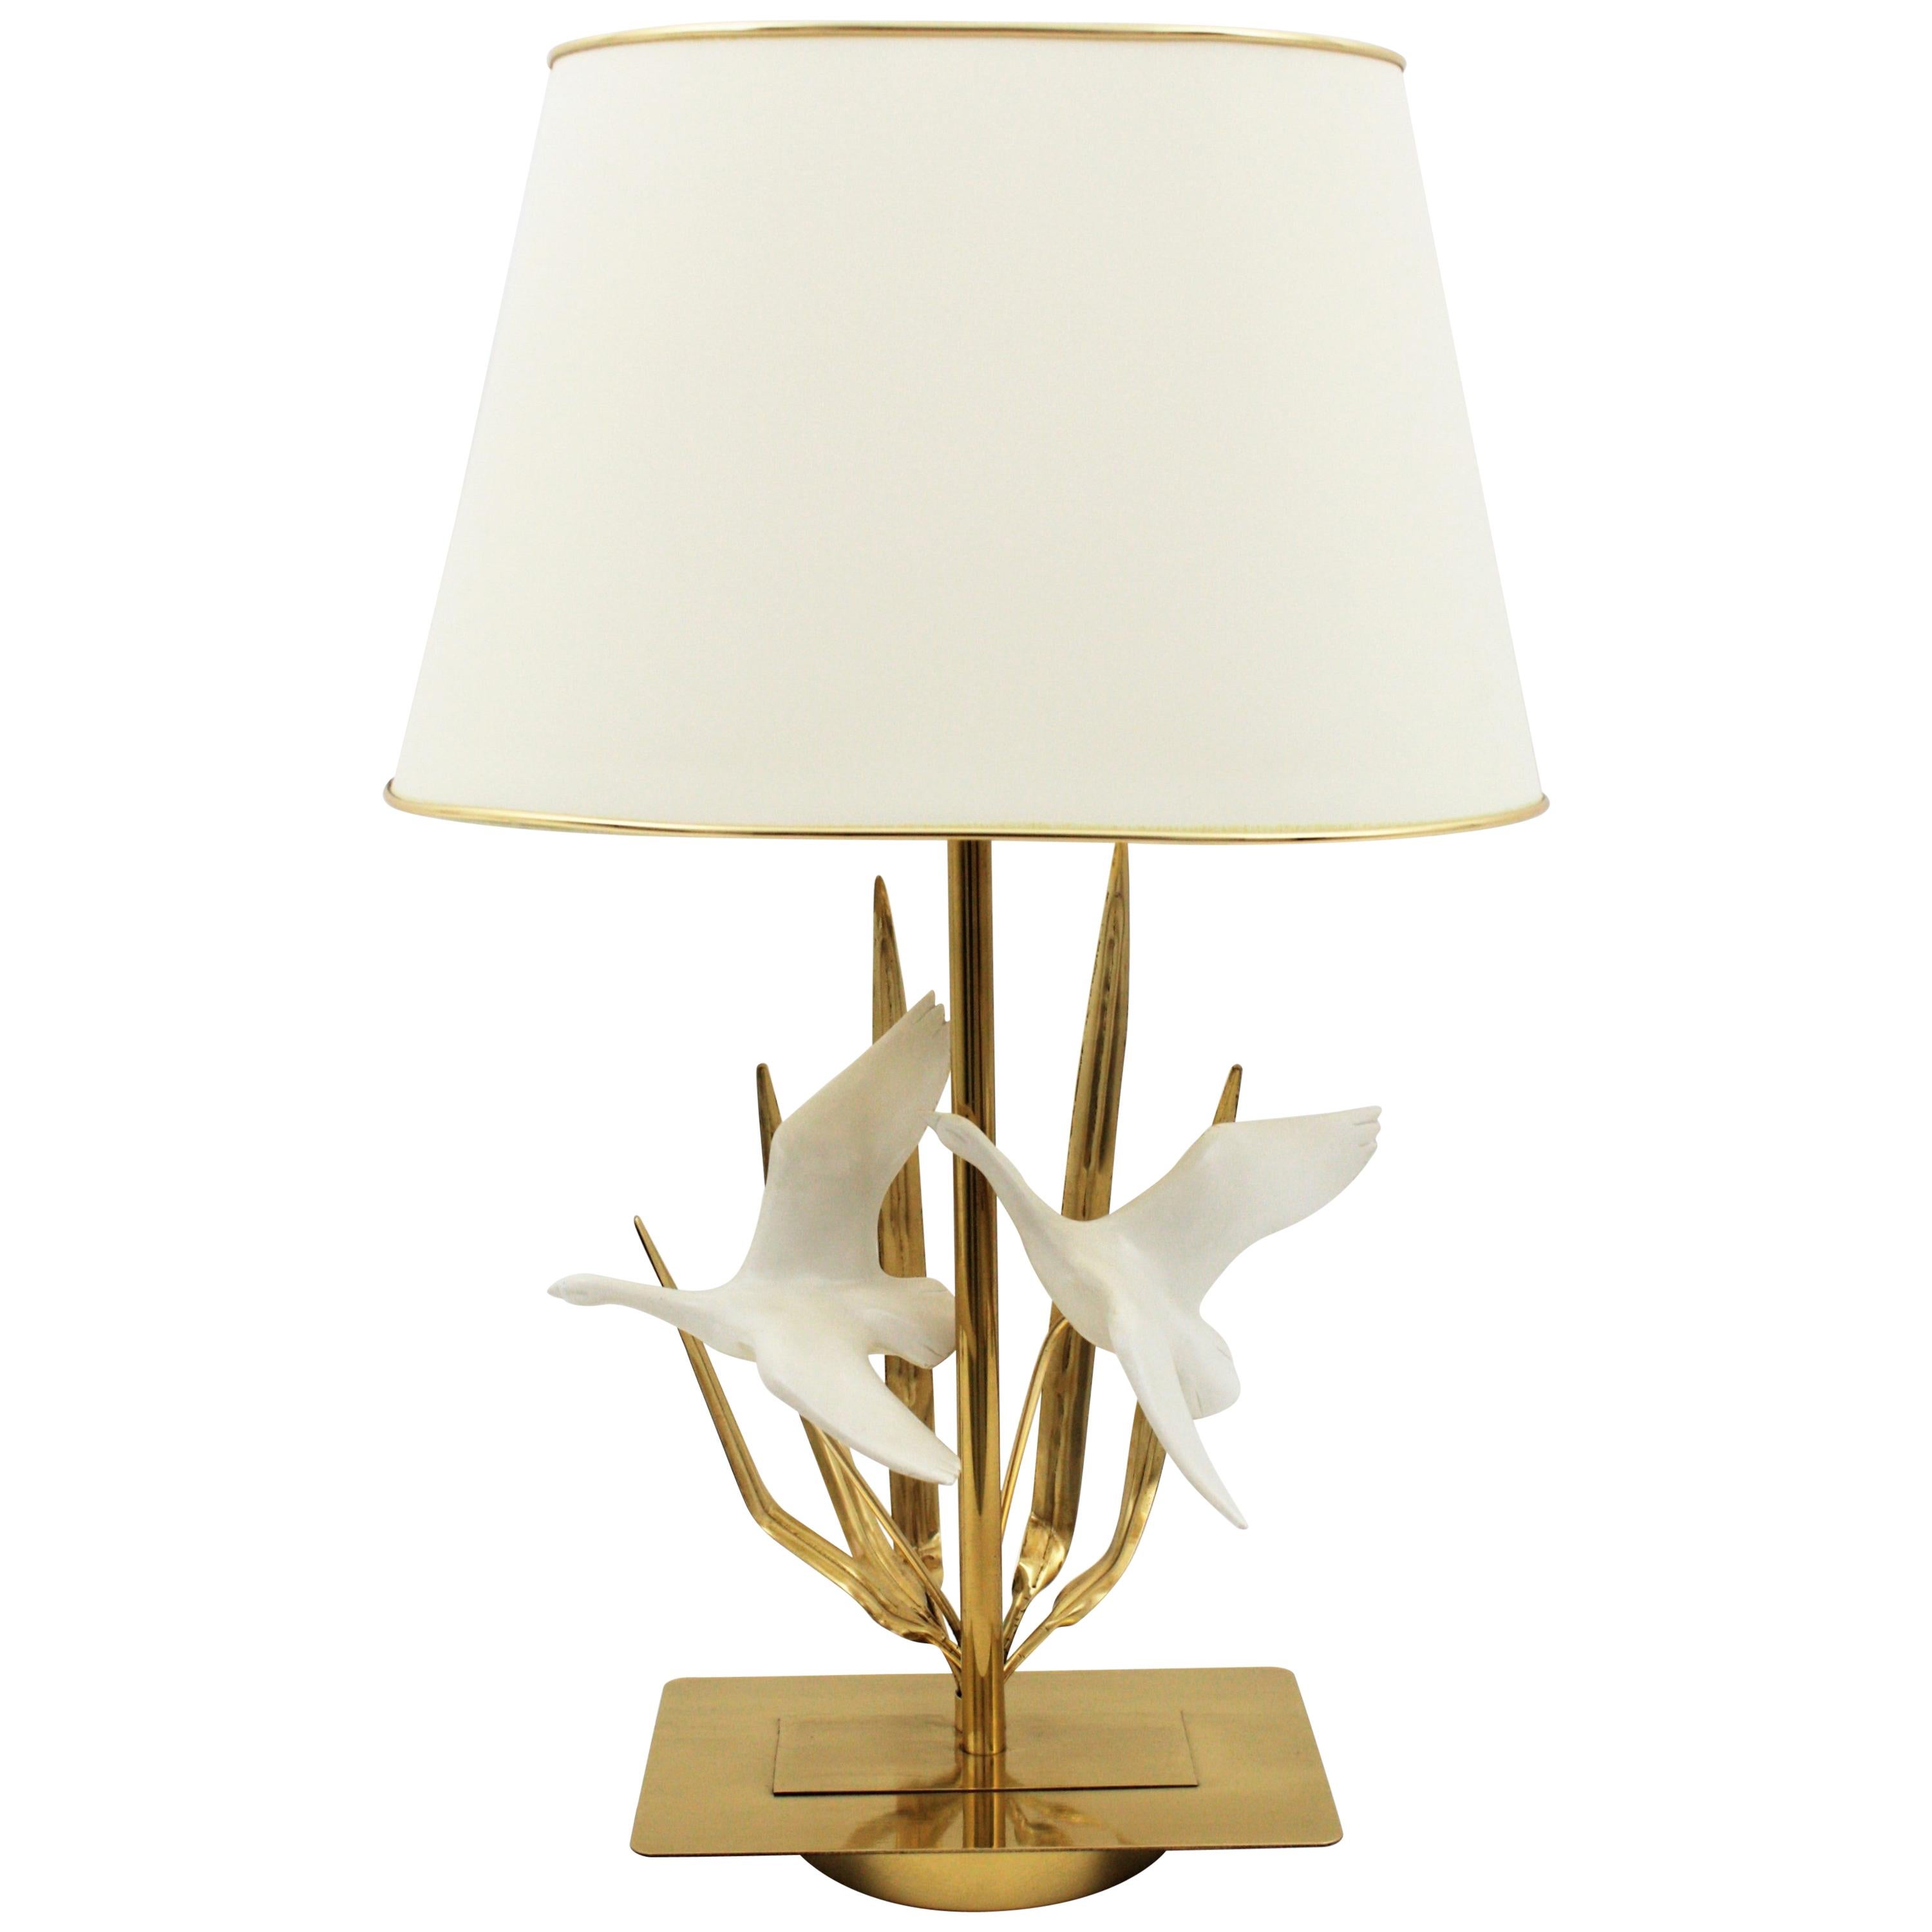 Lampe de table sculpturale en laiton du milieu du siècle avec des détails de feuilles et des oiseaux volants, France, années 1970.
La lampe est entièrement réalisée en laiton et est décorée de deux oiseaux en résine.
L'abat-jour est inclus.
Mesures